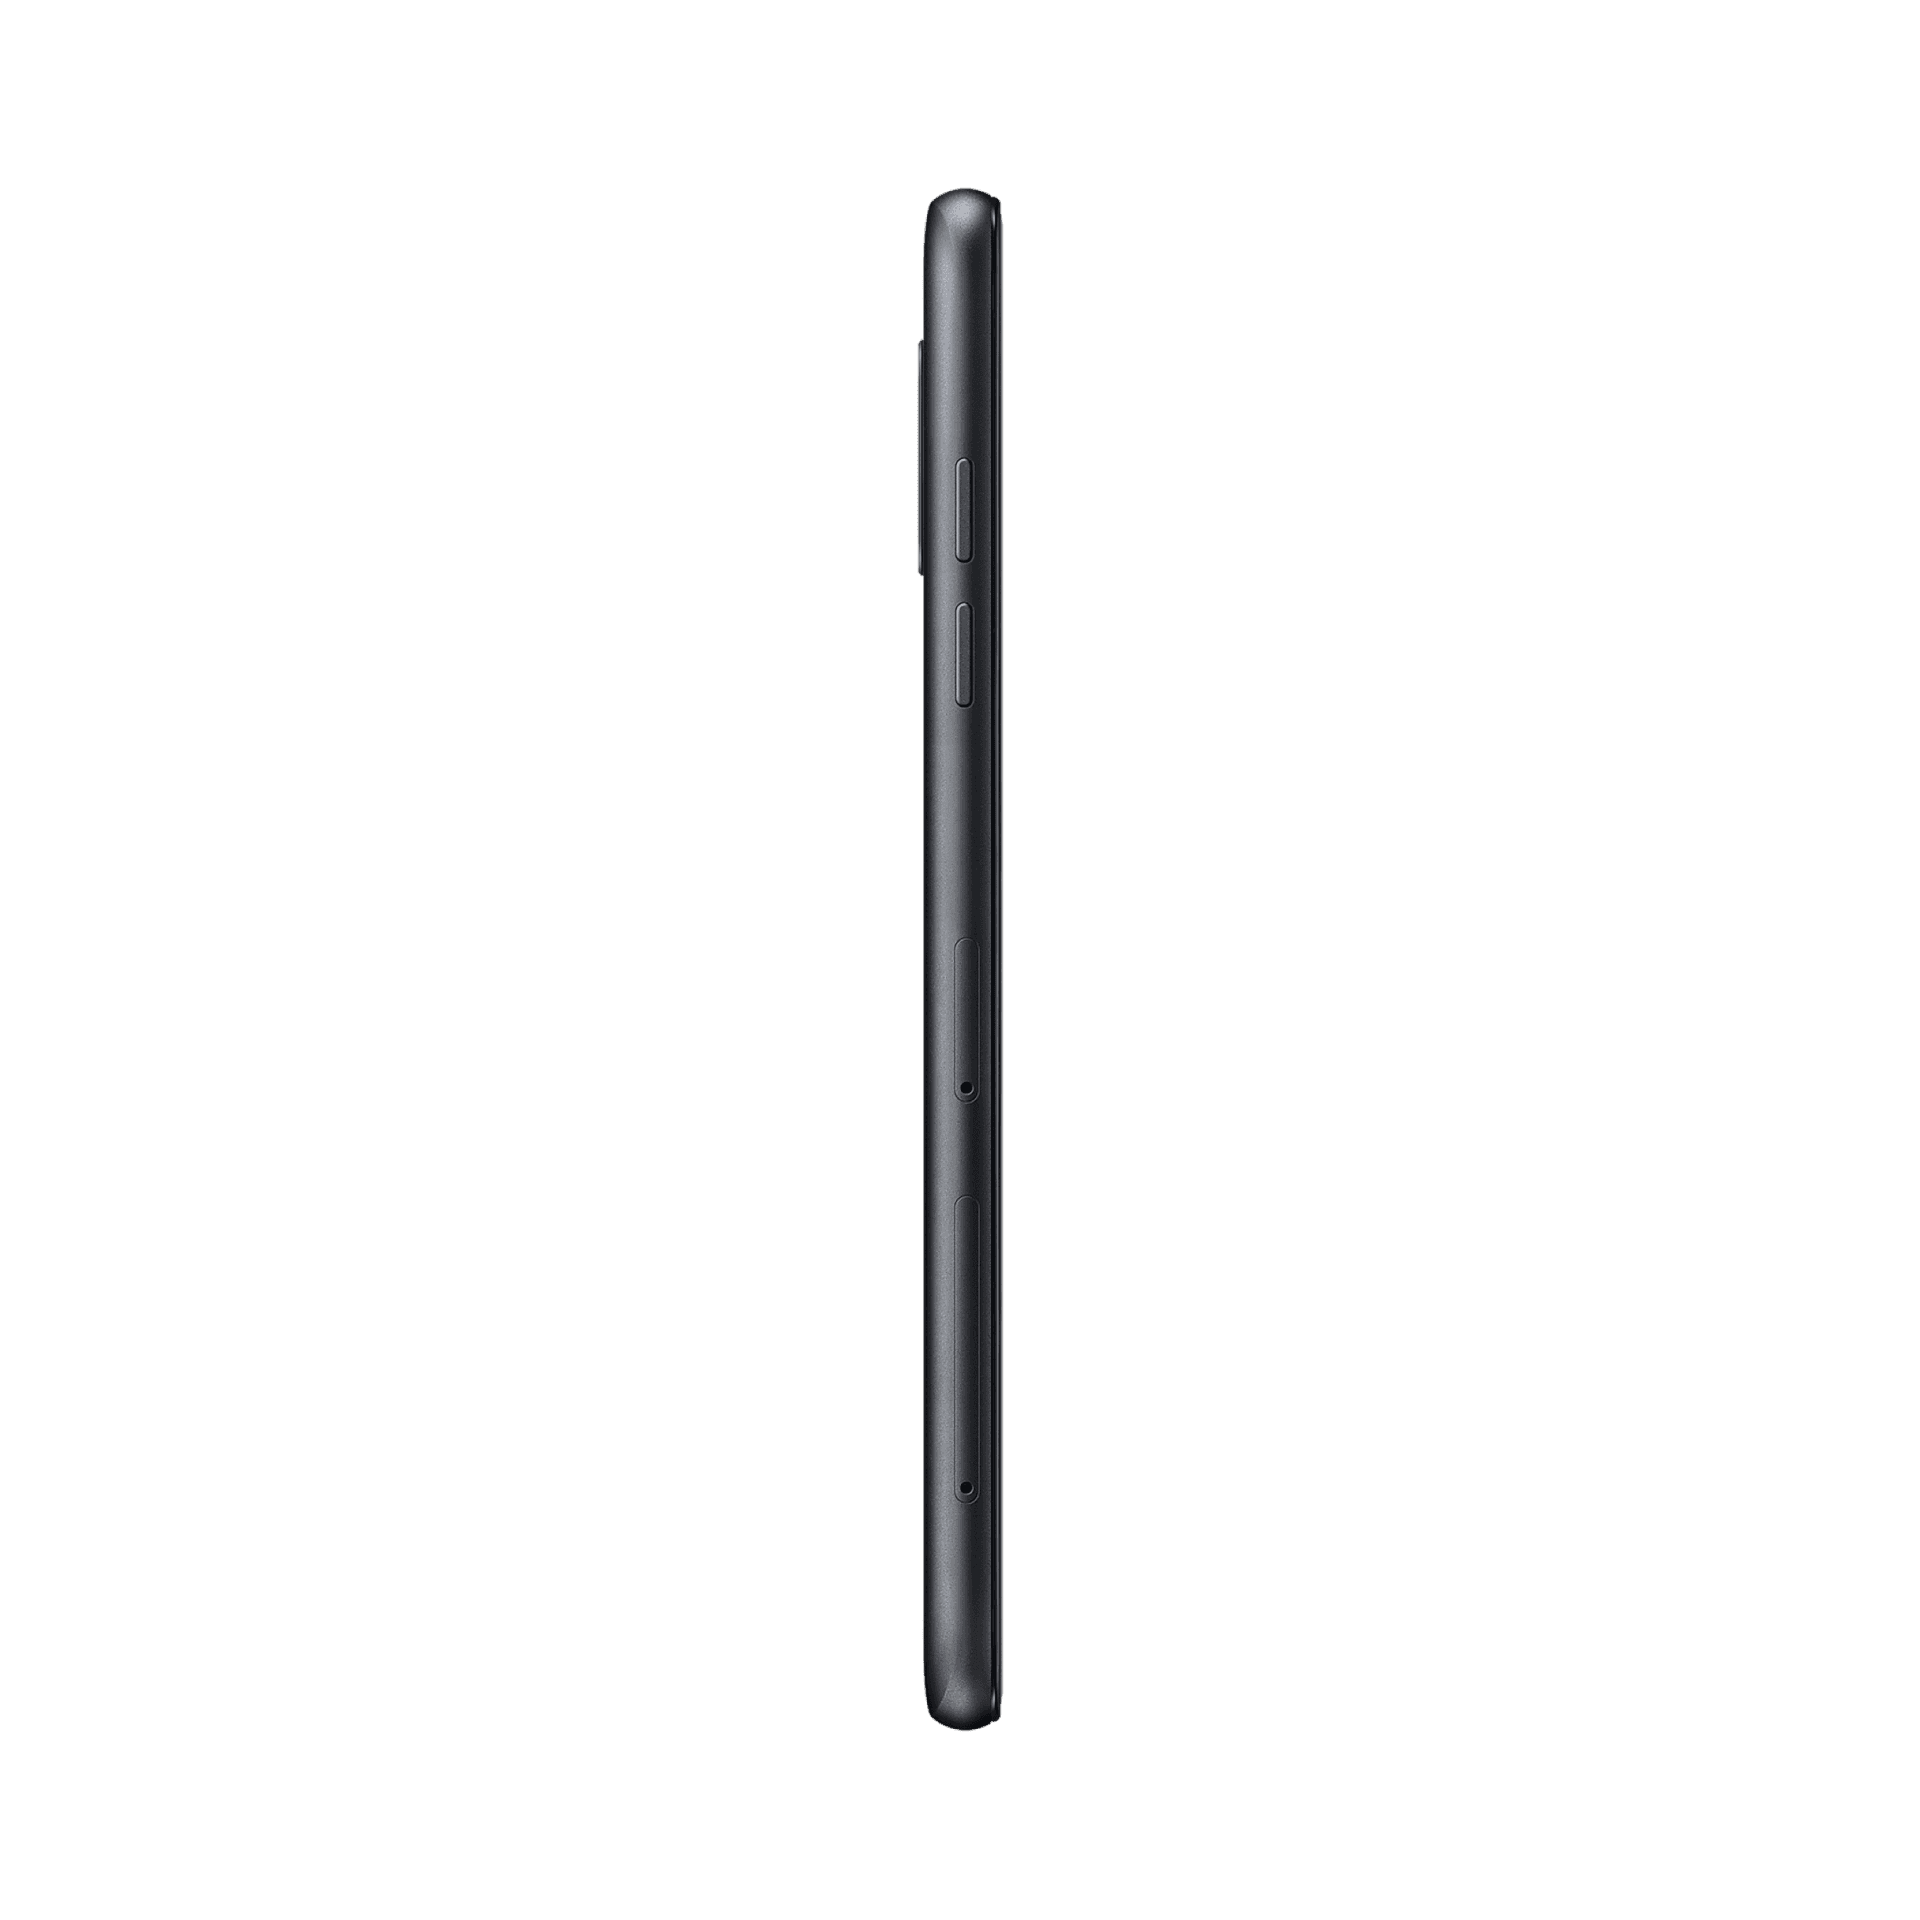 Samsung Galaxy A6 - 32 GB - Siyah